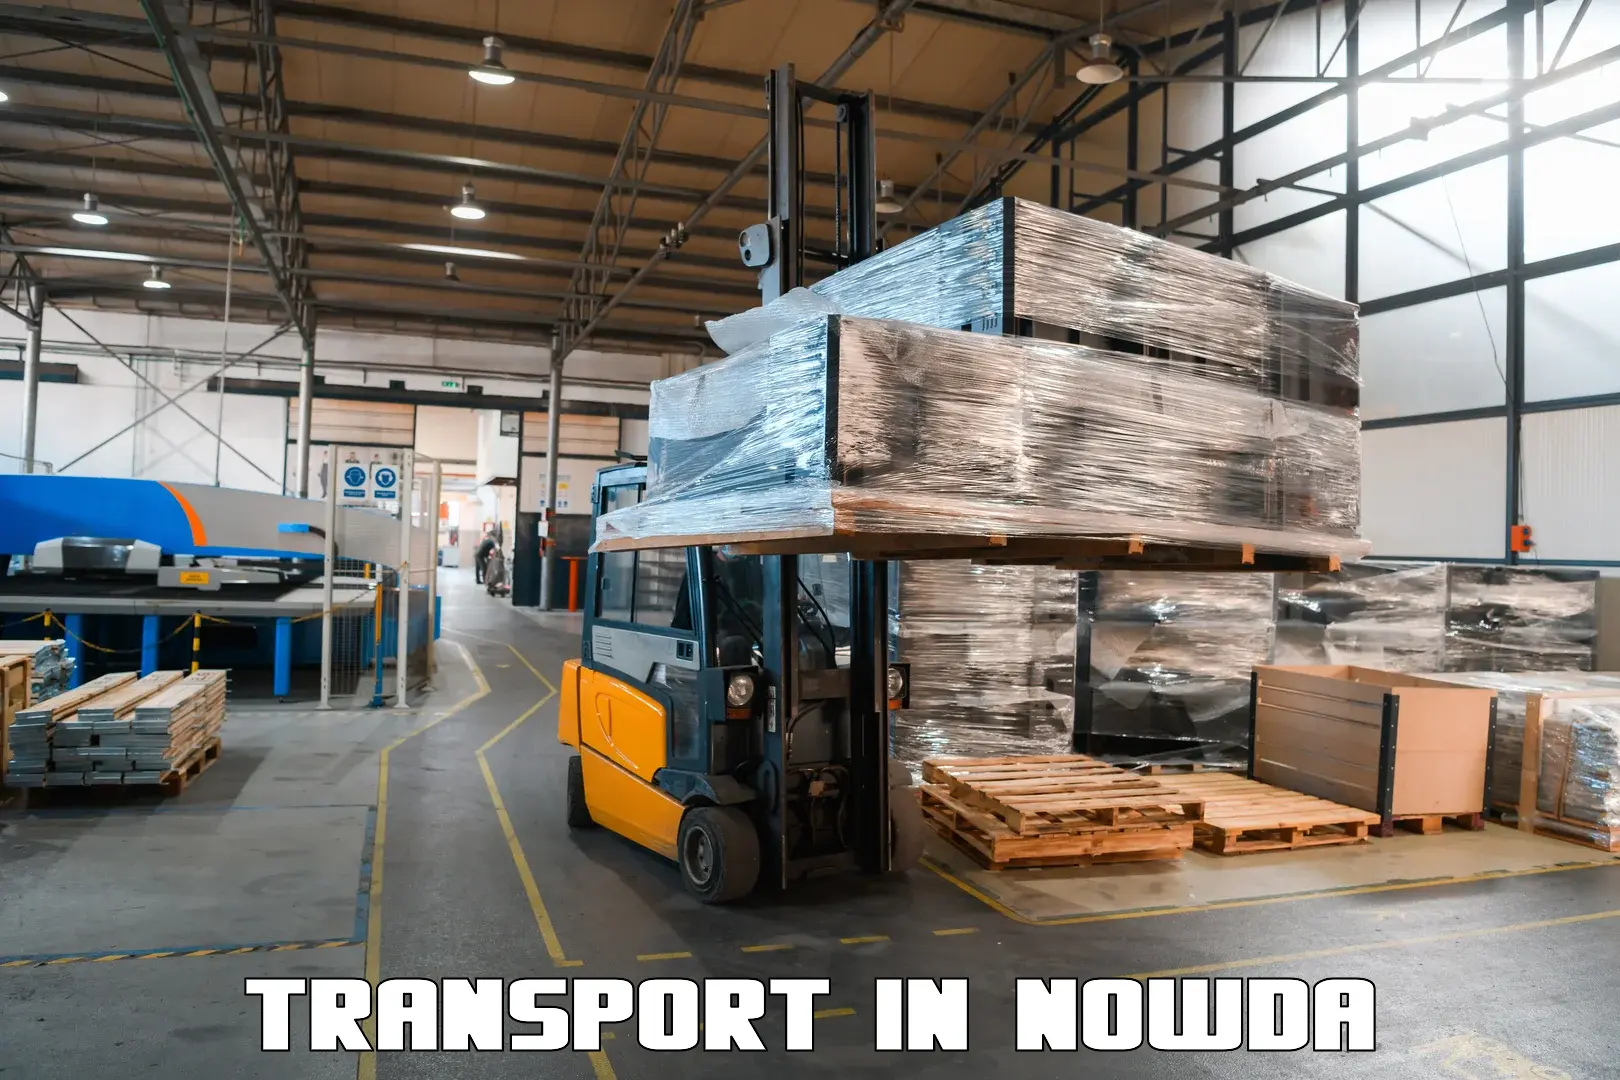 Furniture transport service in Nowda